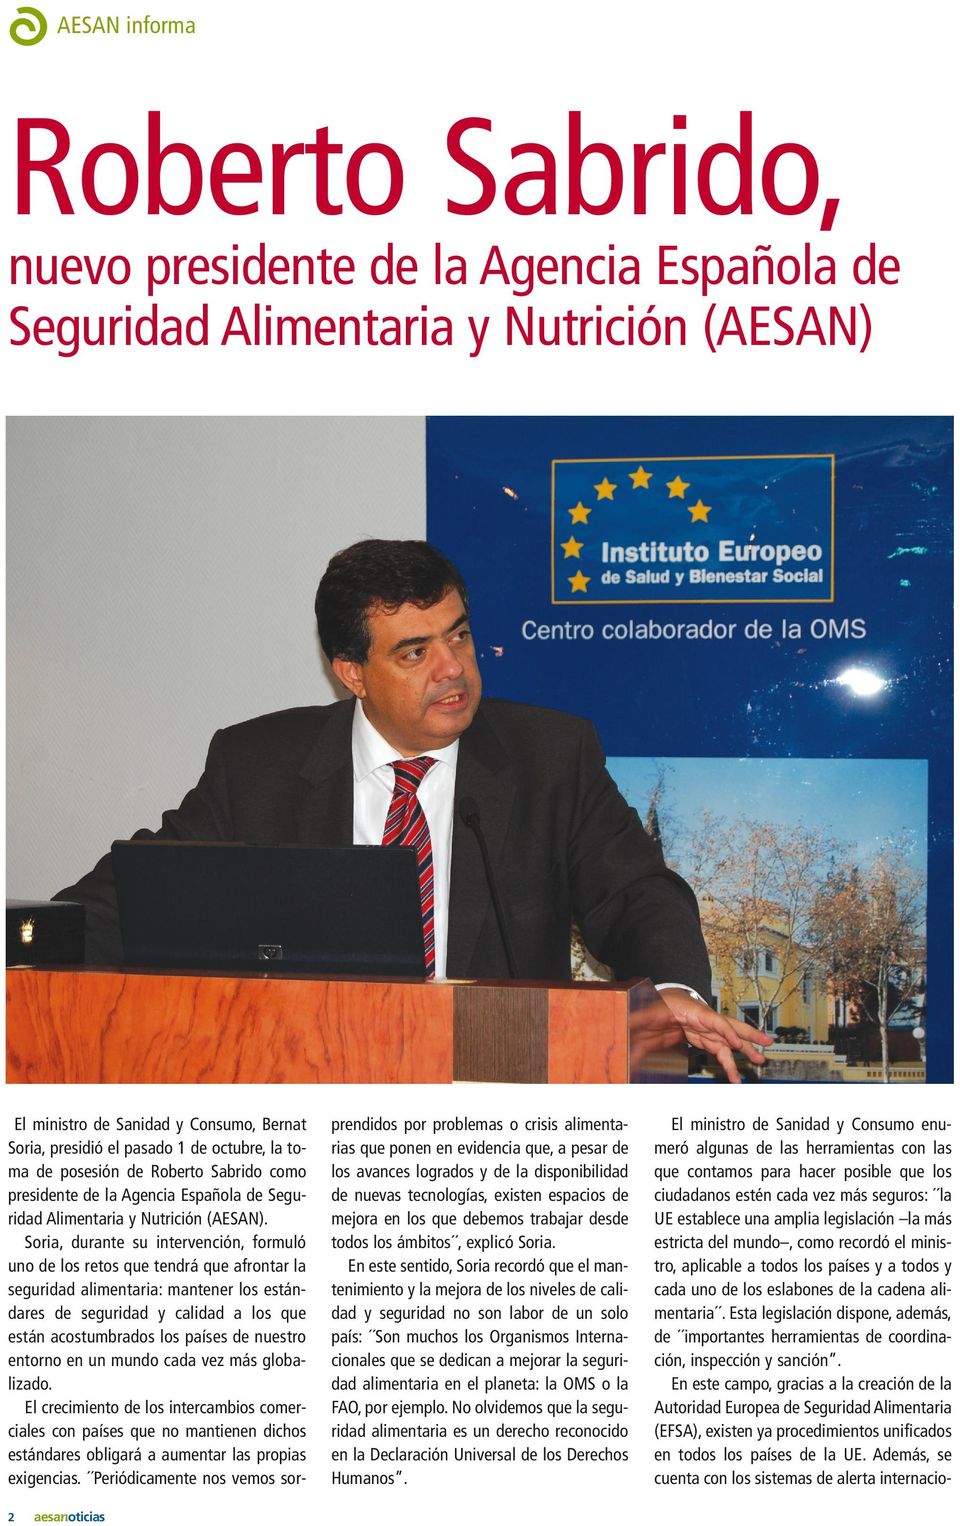 Soria, durante su intervención, formuló uno de los retos que tendrá que afrontar la seguridad alimentaria: mantener los estándares de seguridad y calidad a los que están acostumbrados los países de